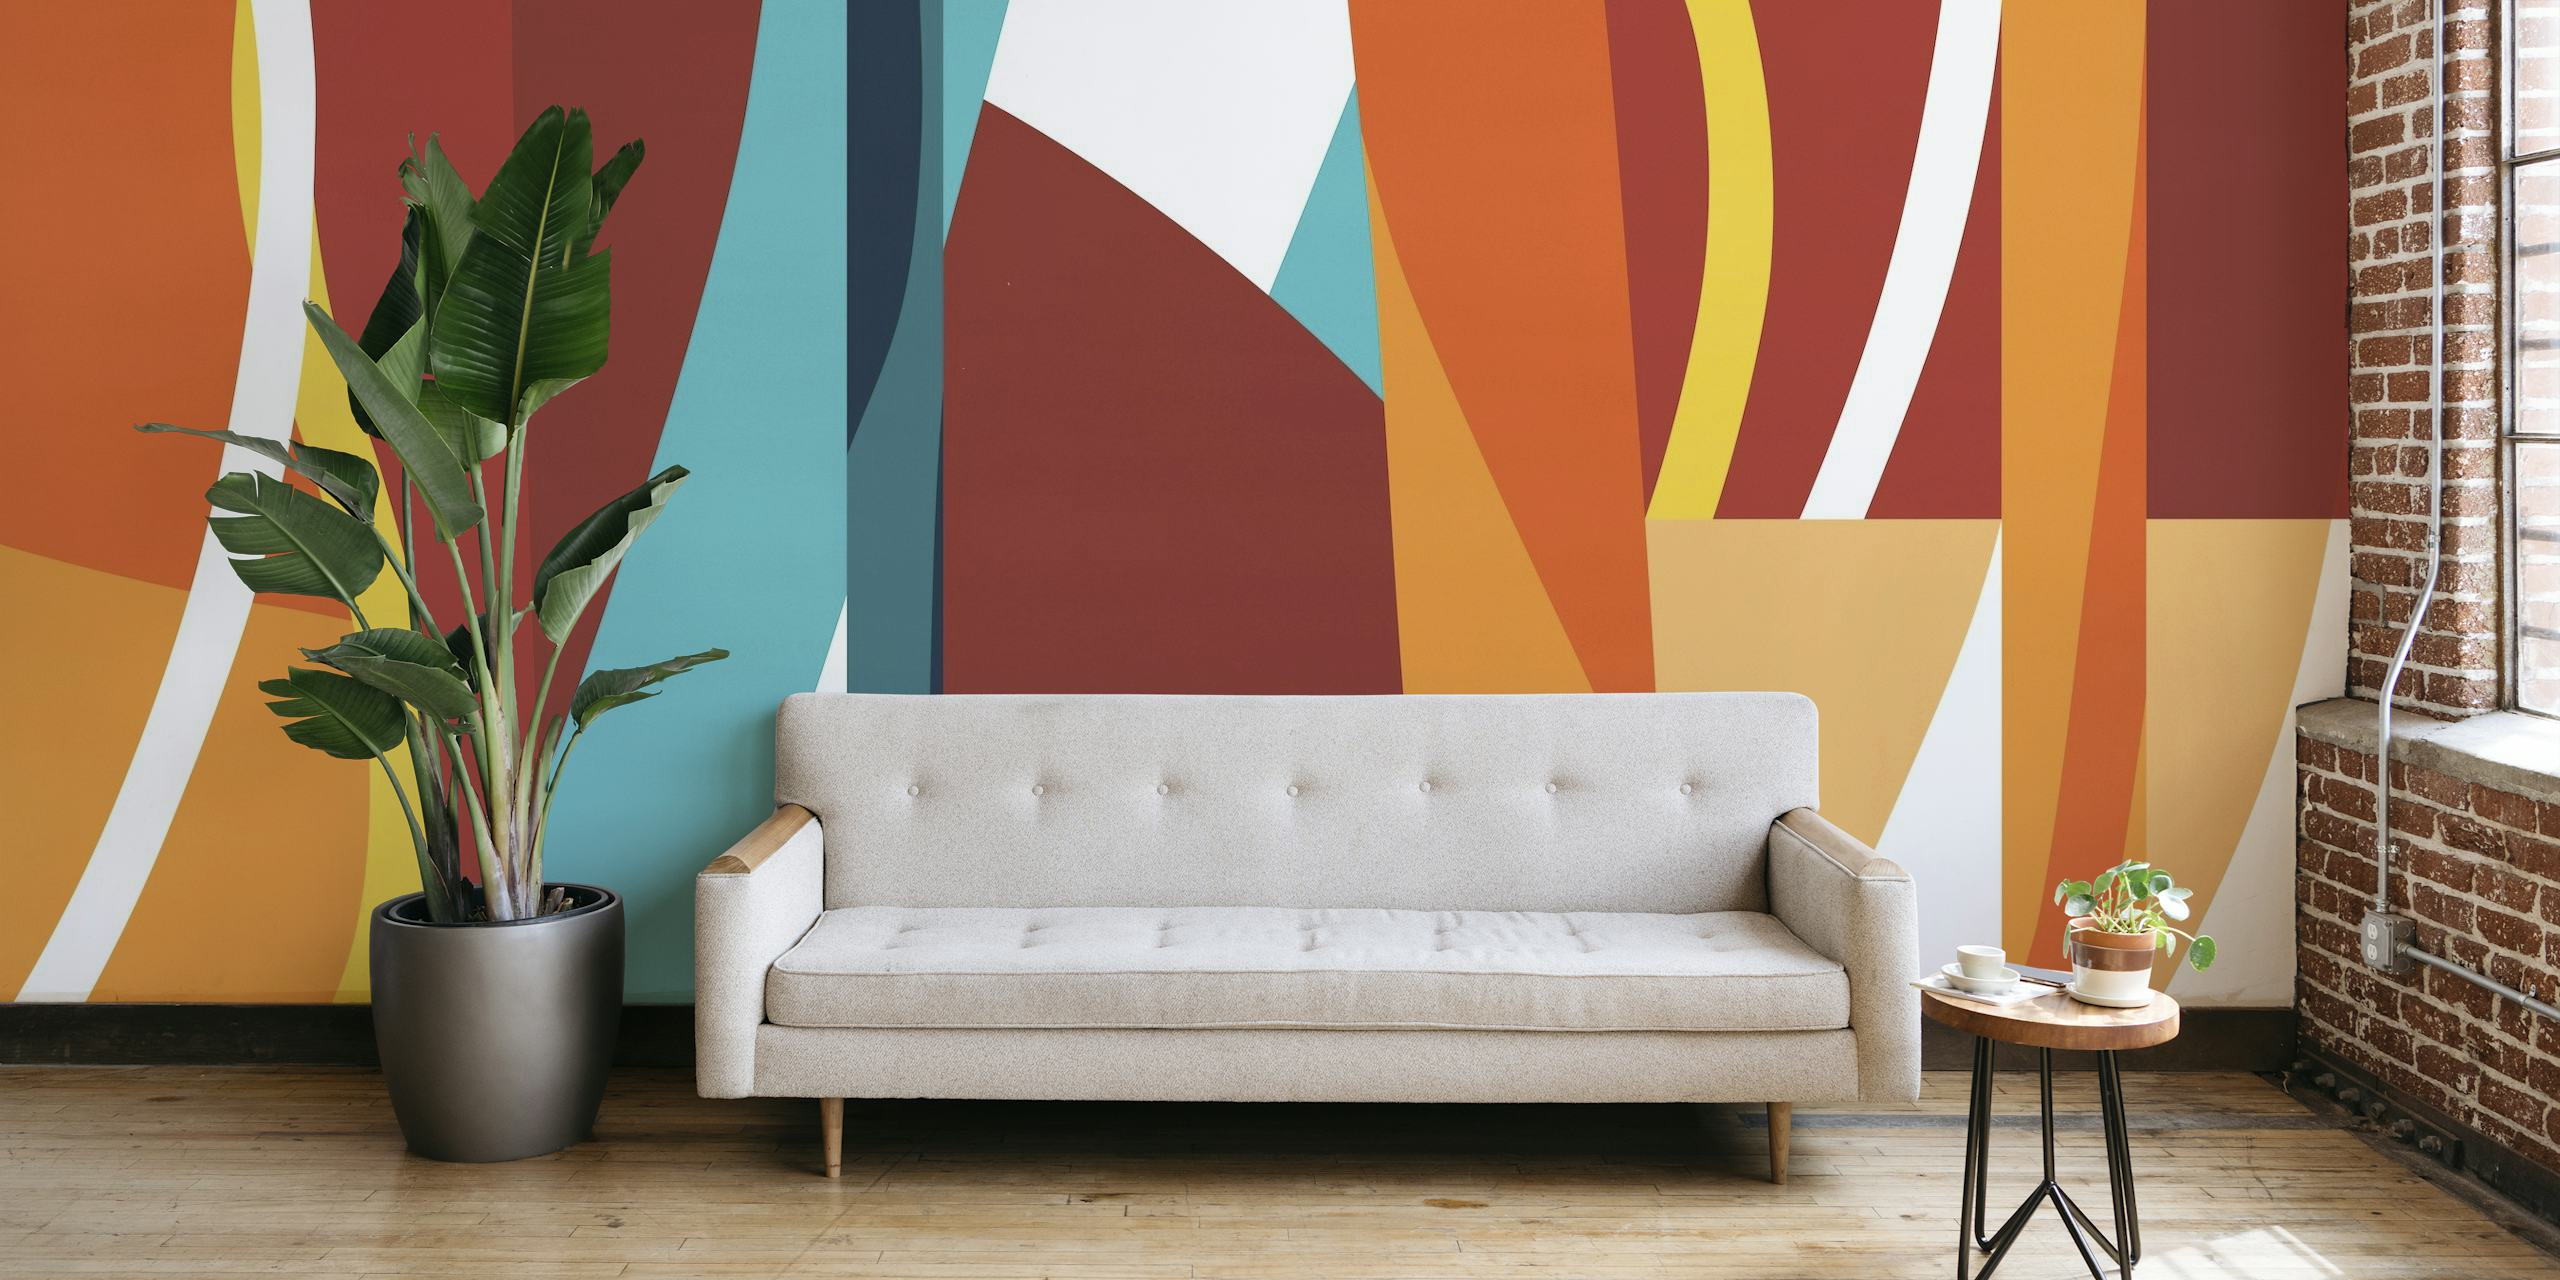 Dynamická abstraktní nástěnná malba s barevnými tahy v červené, oranžové, žluté a modré